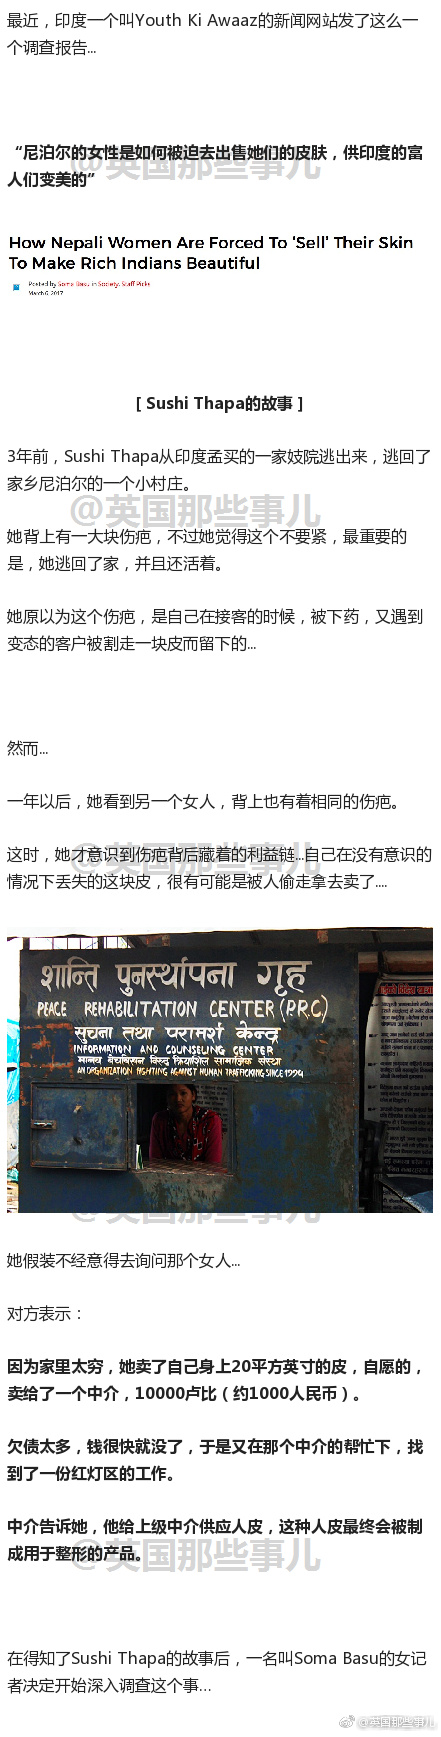 尼泊尔兴起一门生意：卖人皮